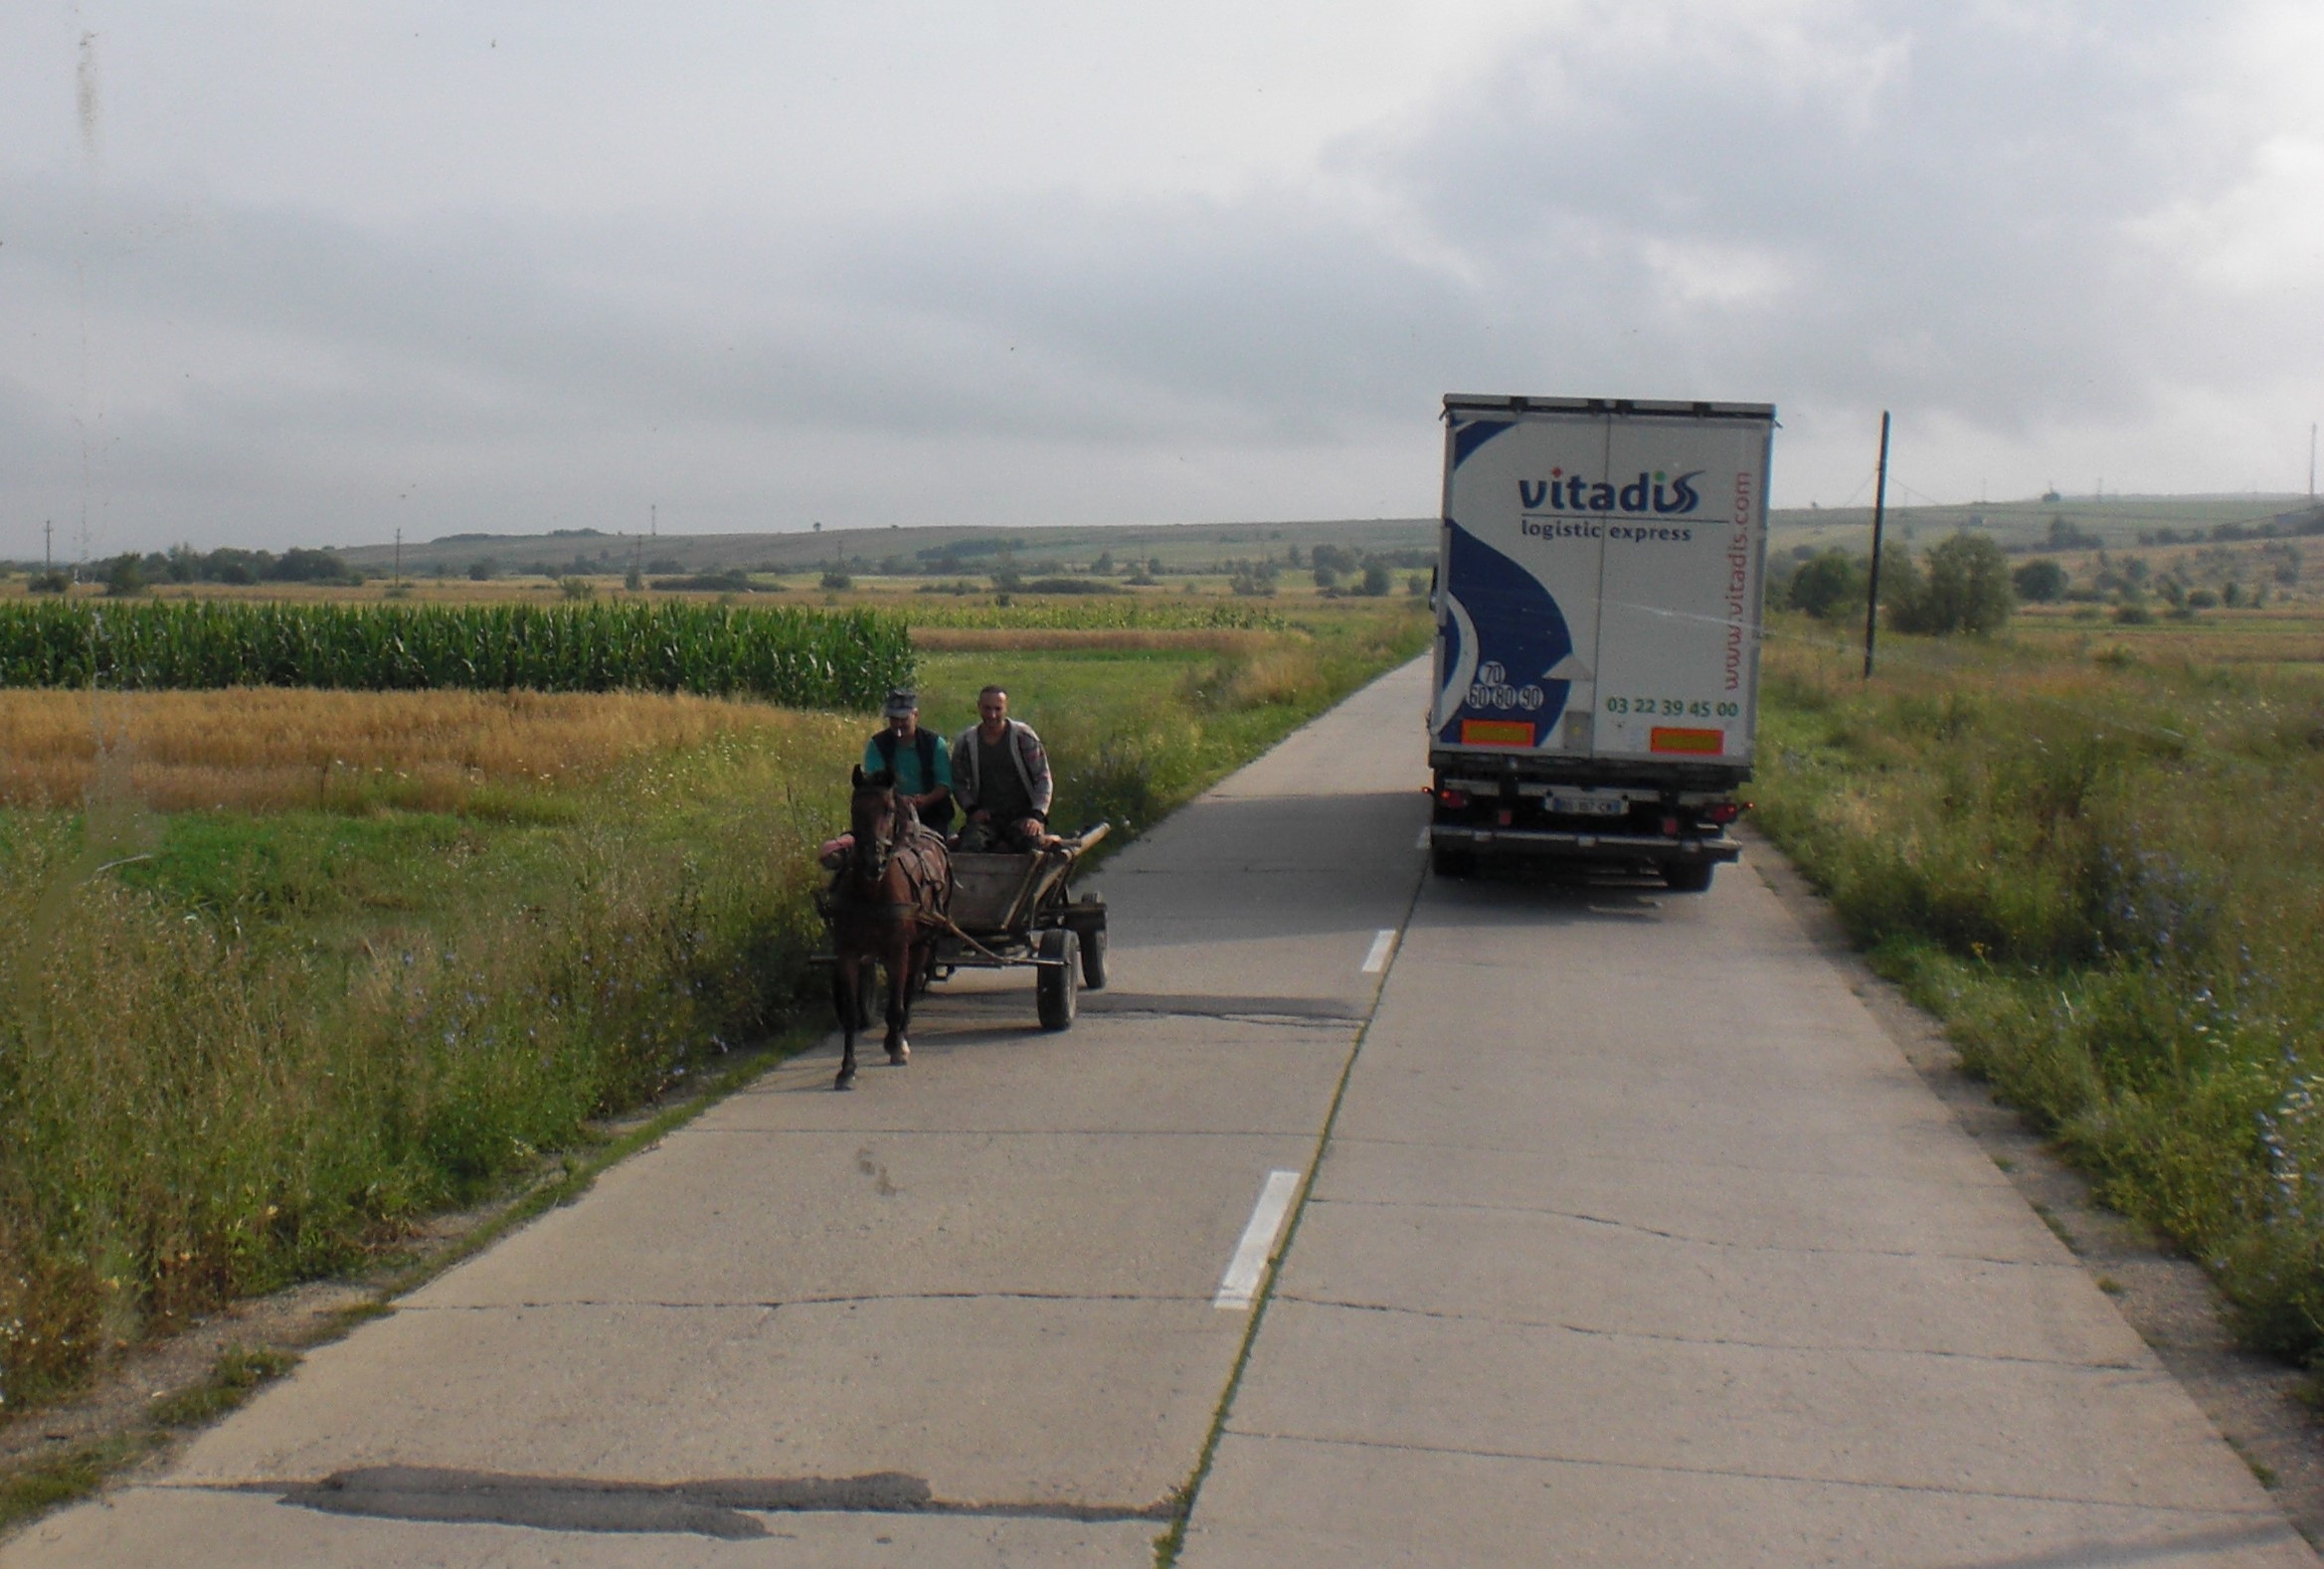 Vitadis road transport in Romania